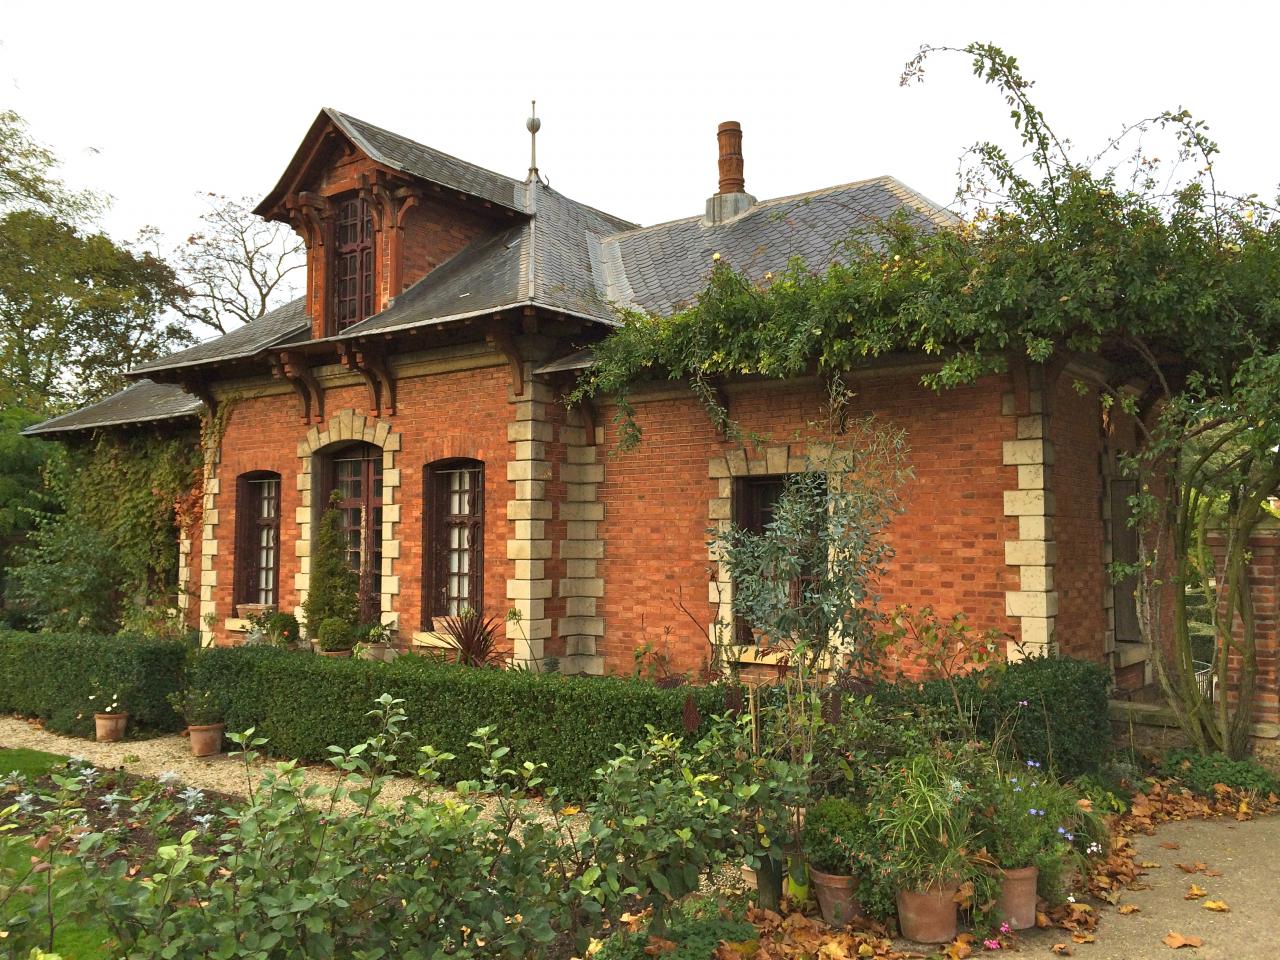 Petite maison - Jardin de Bagatelle - Paris